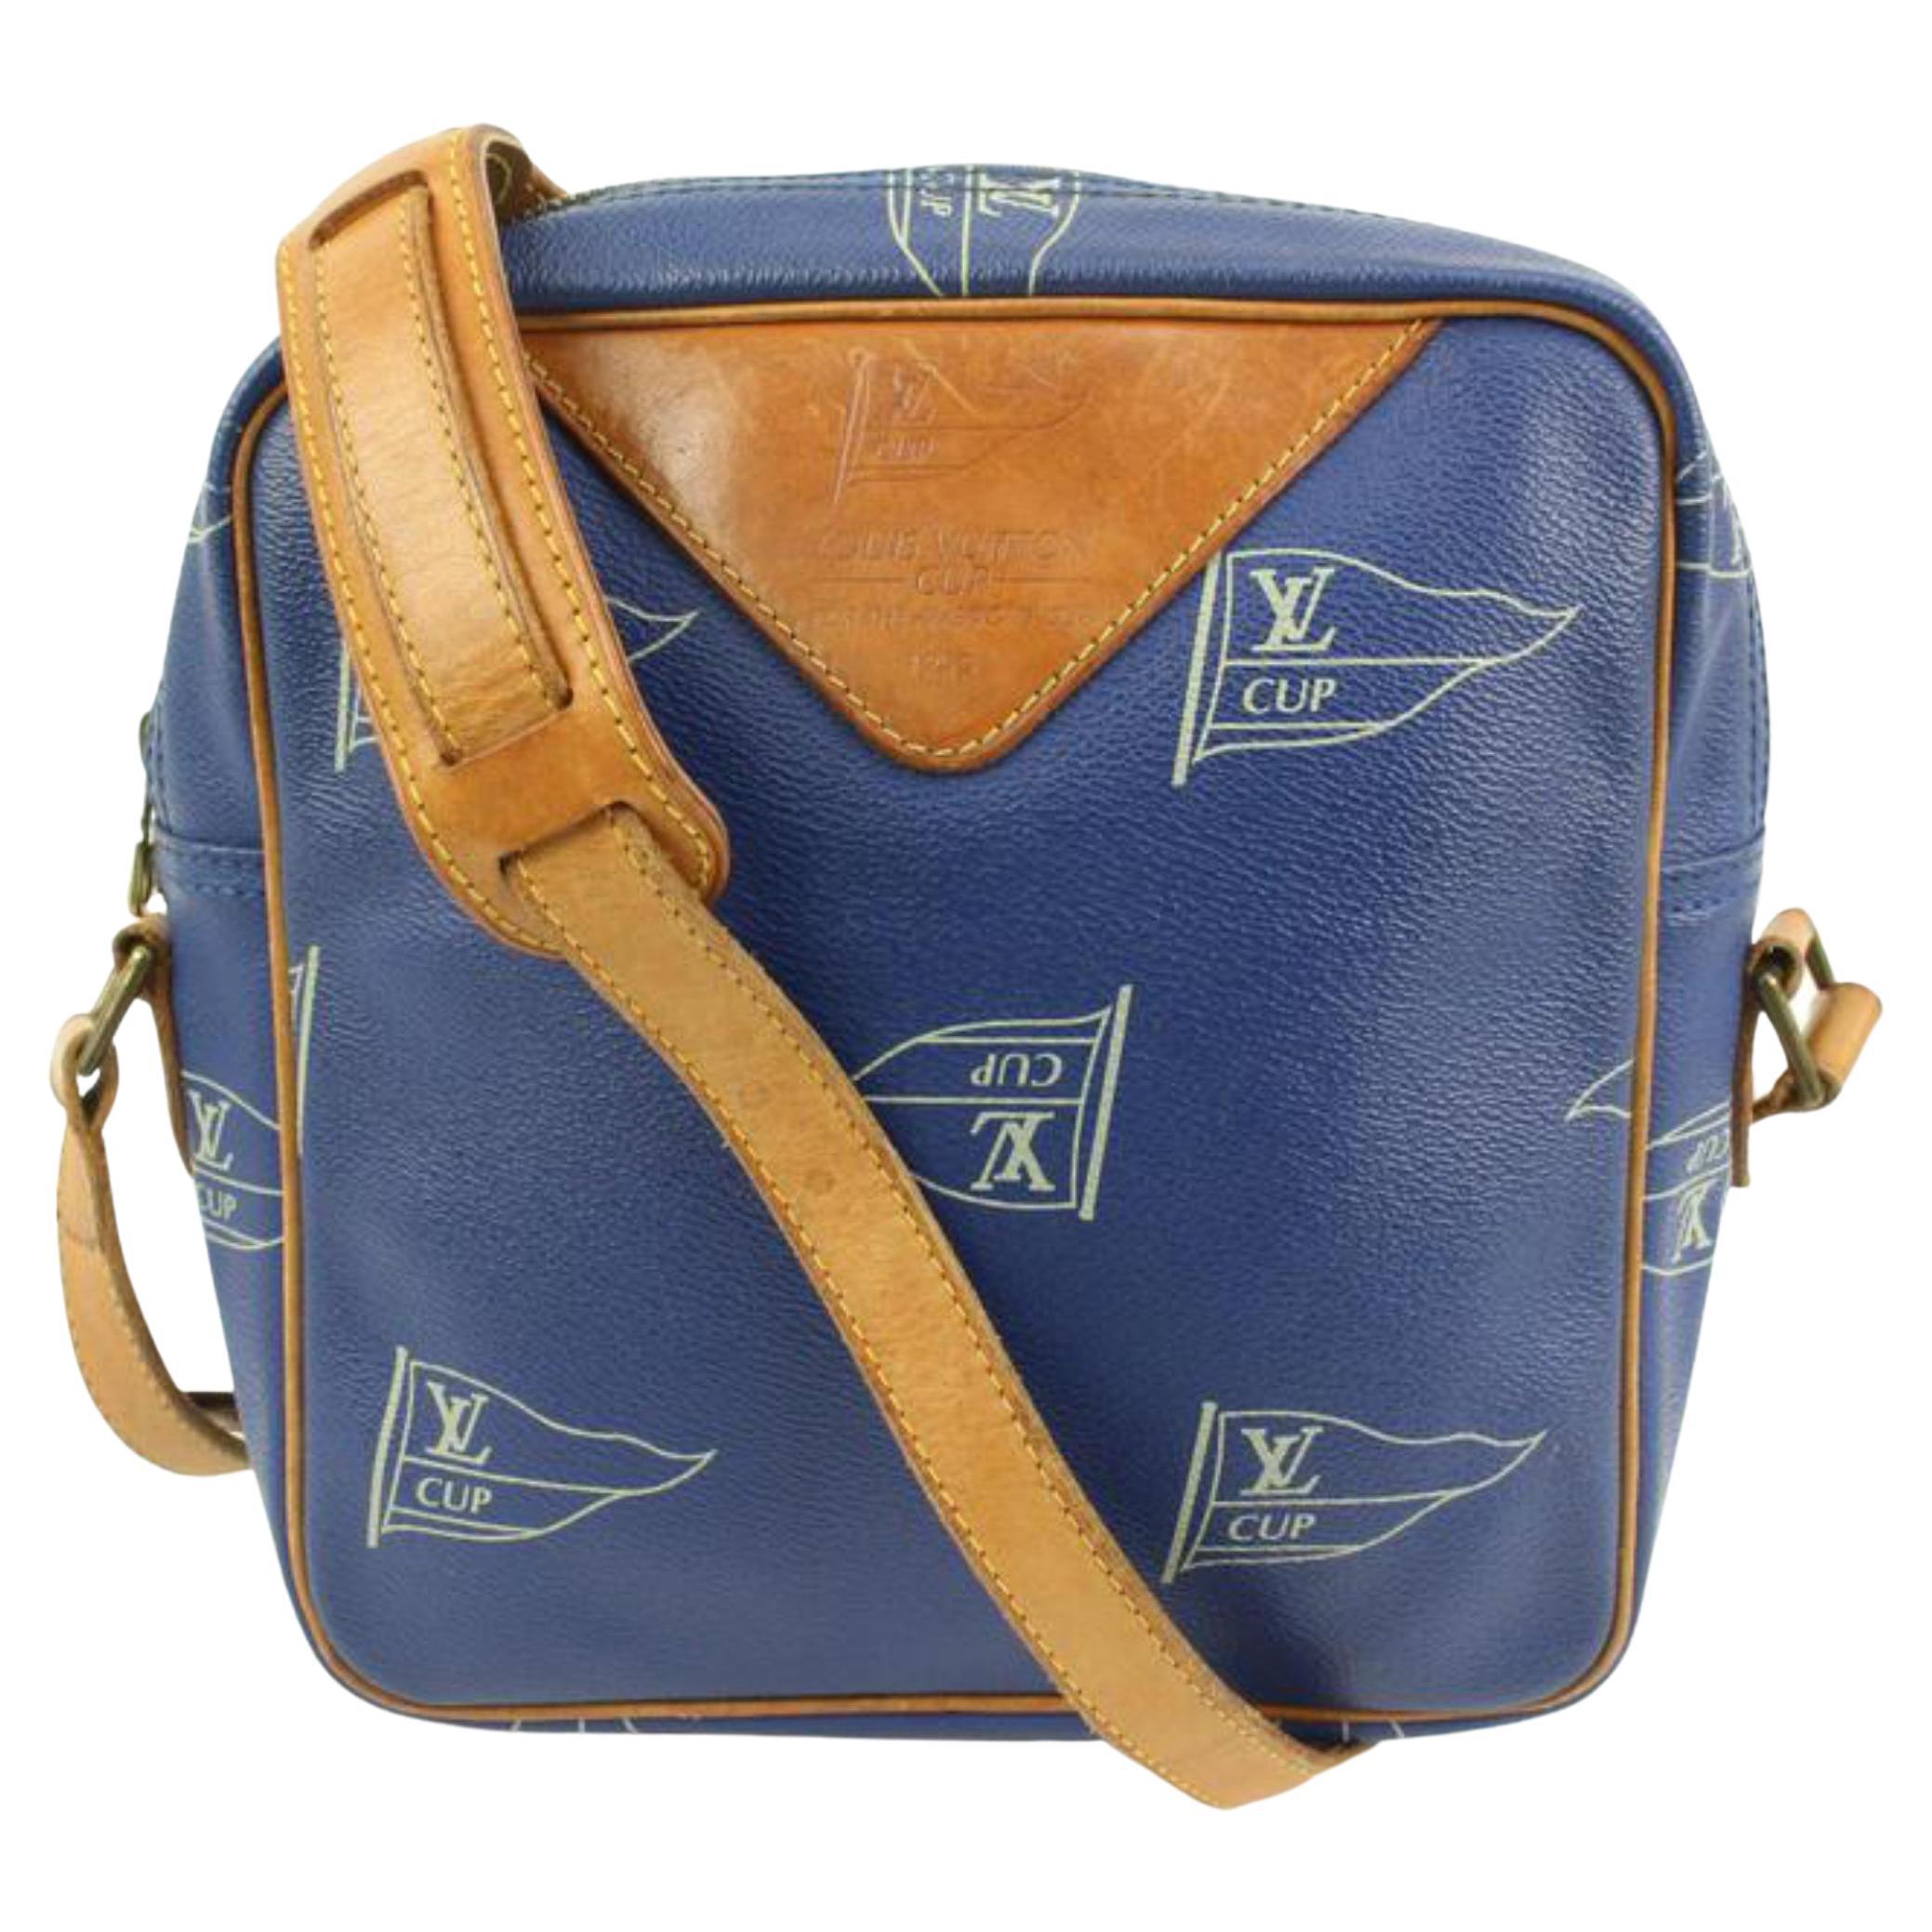 Louis Vuitton Sailing Bag - For Sale on 1stDibs  louis vuitton boat bag, louis  vuitton cup bag, lv boat bag